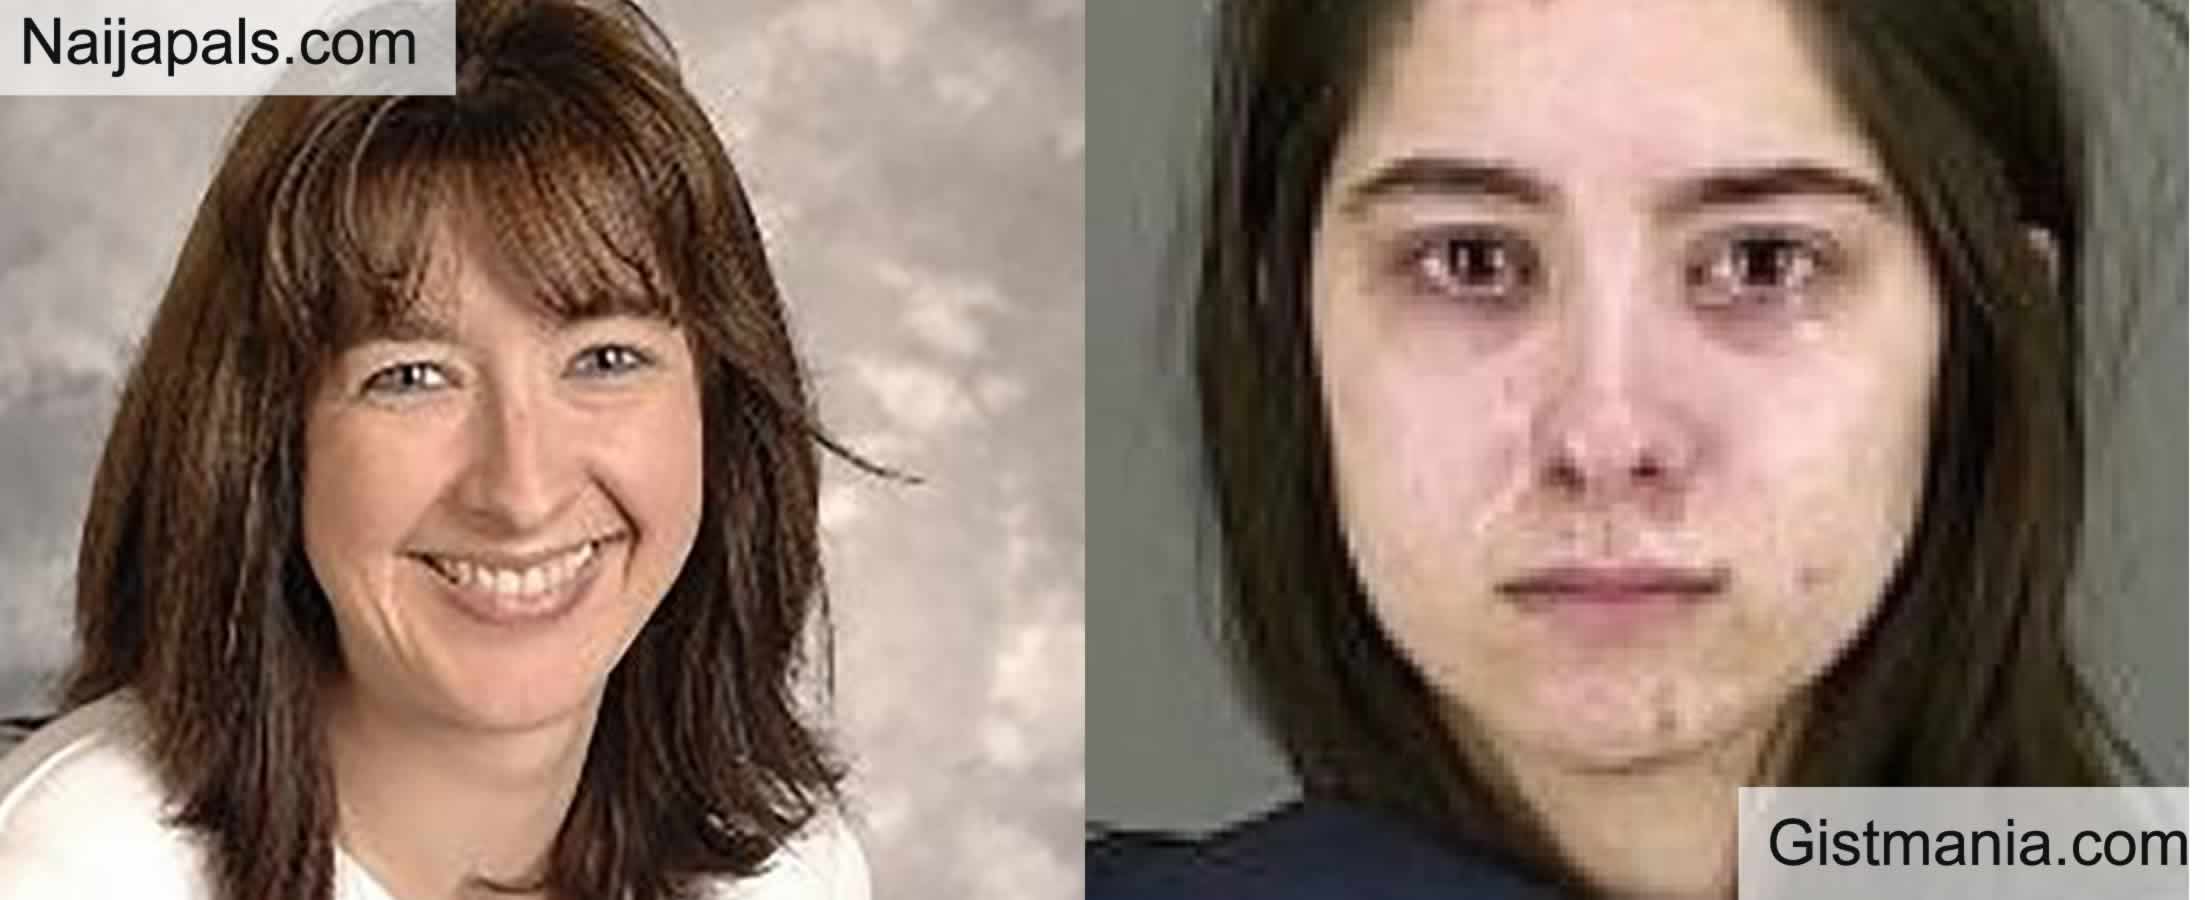 Una mujer mata a su madre con una sartén y un cuchillo tras descubrir que la expulsaron del colegio